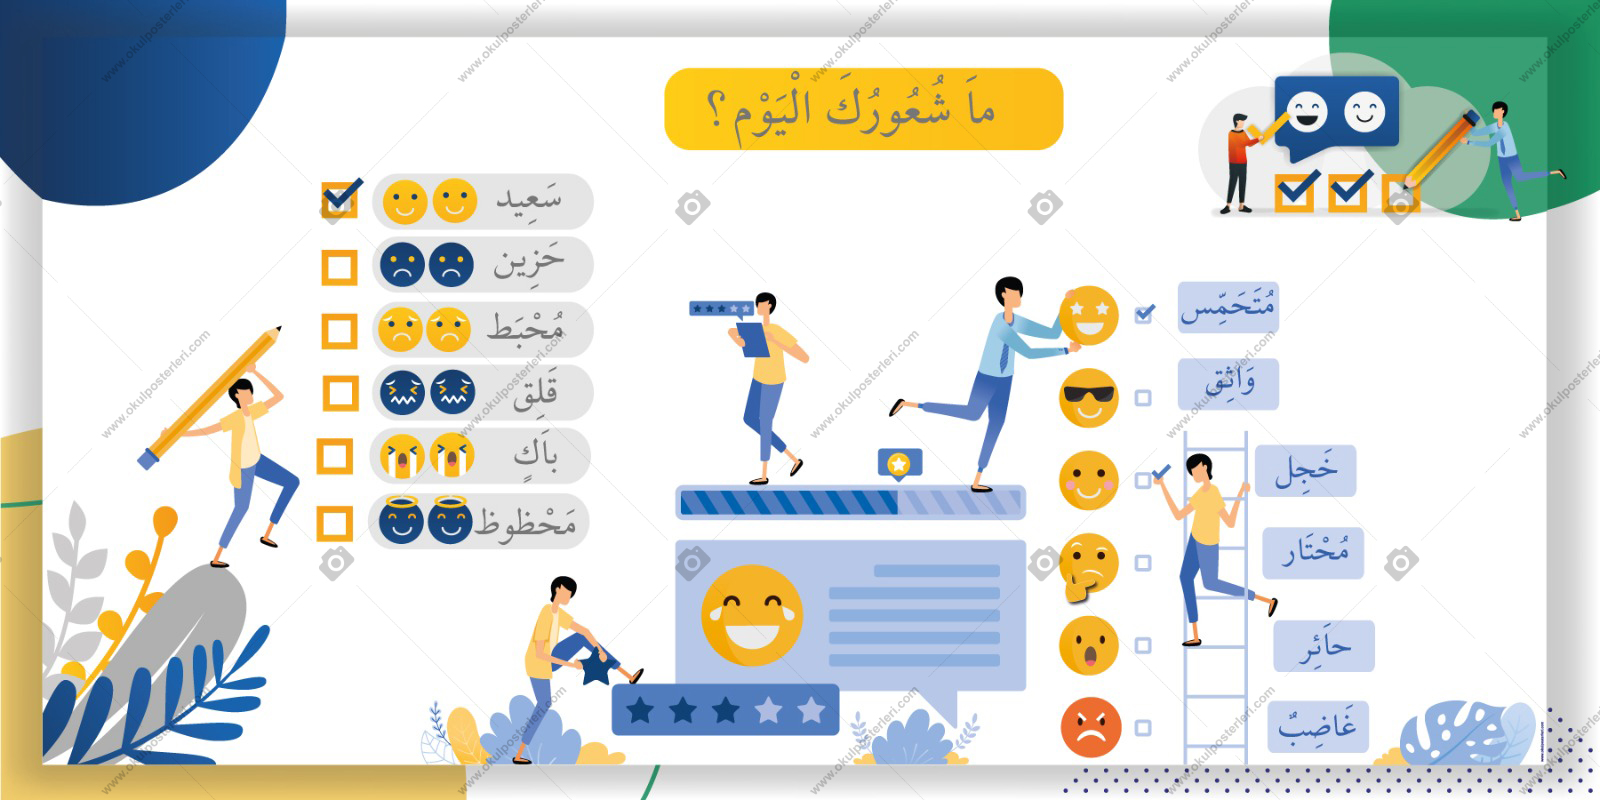 Arapça Duygular Posteri